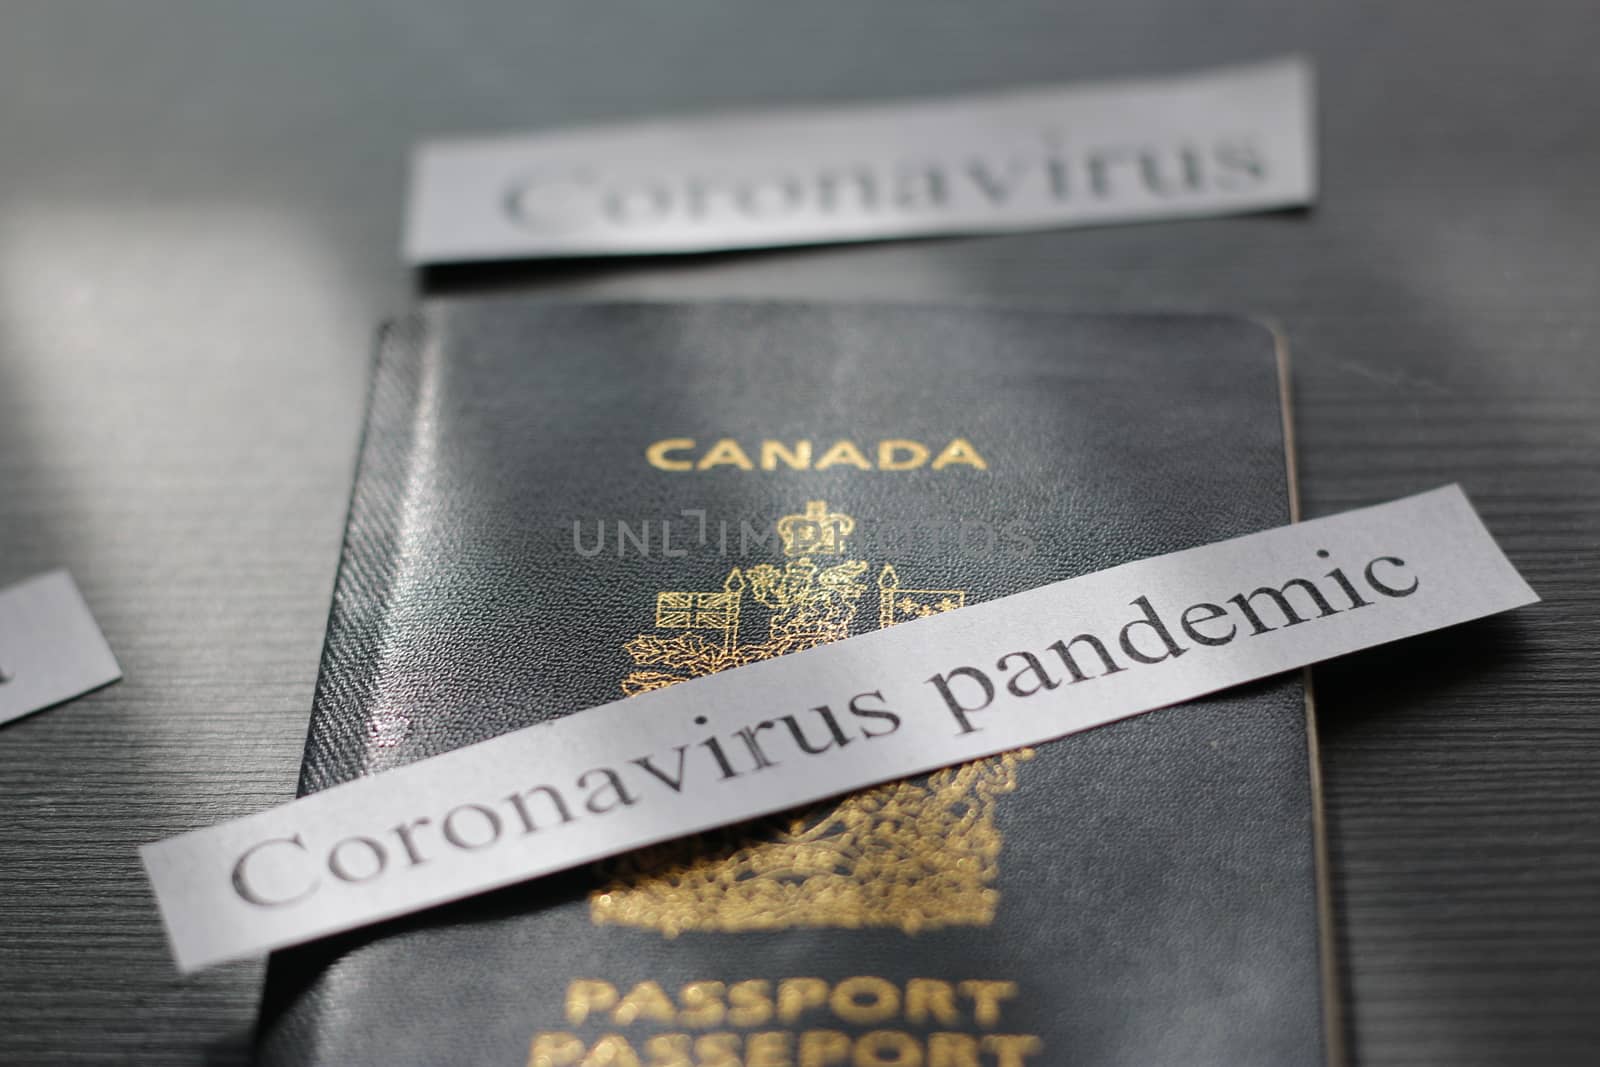 Canadian passport next to caronavirus headline